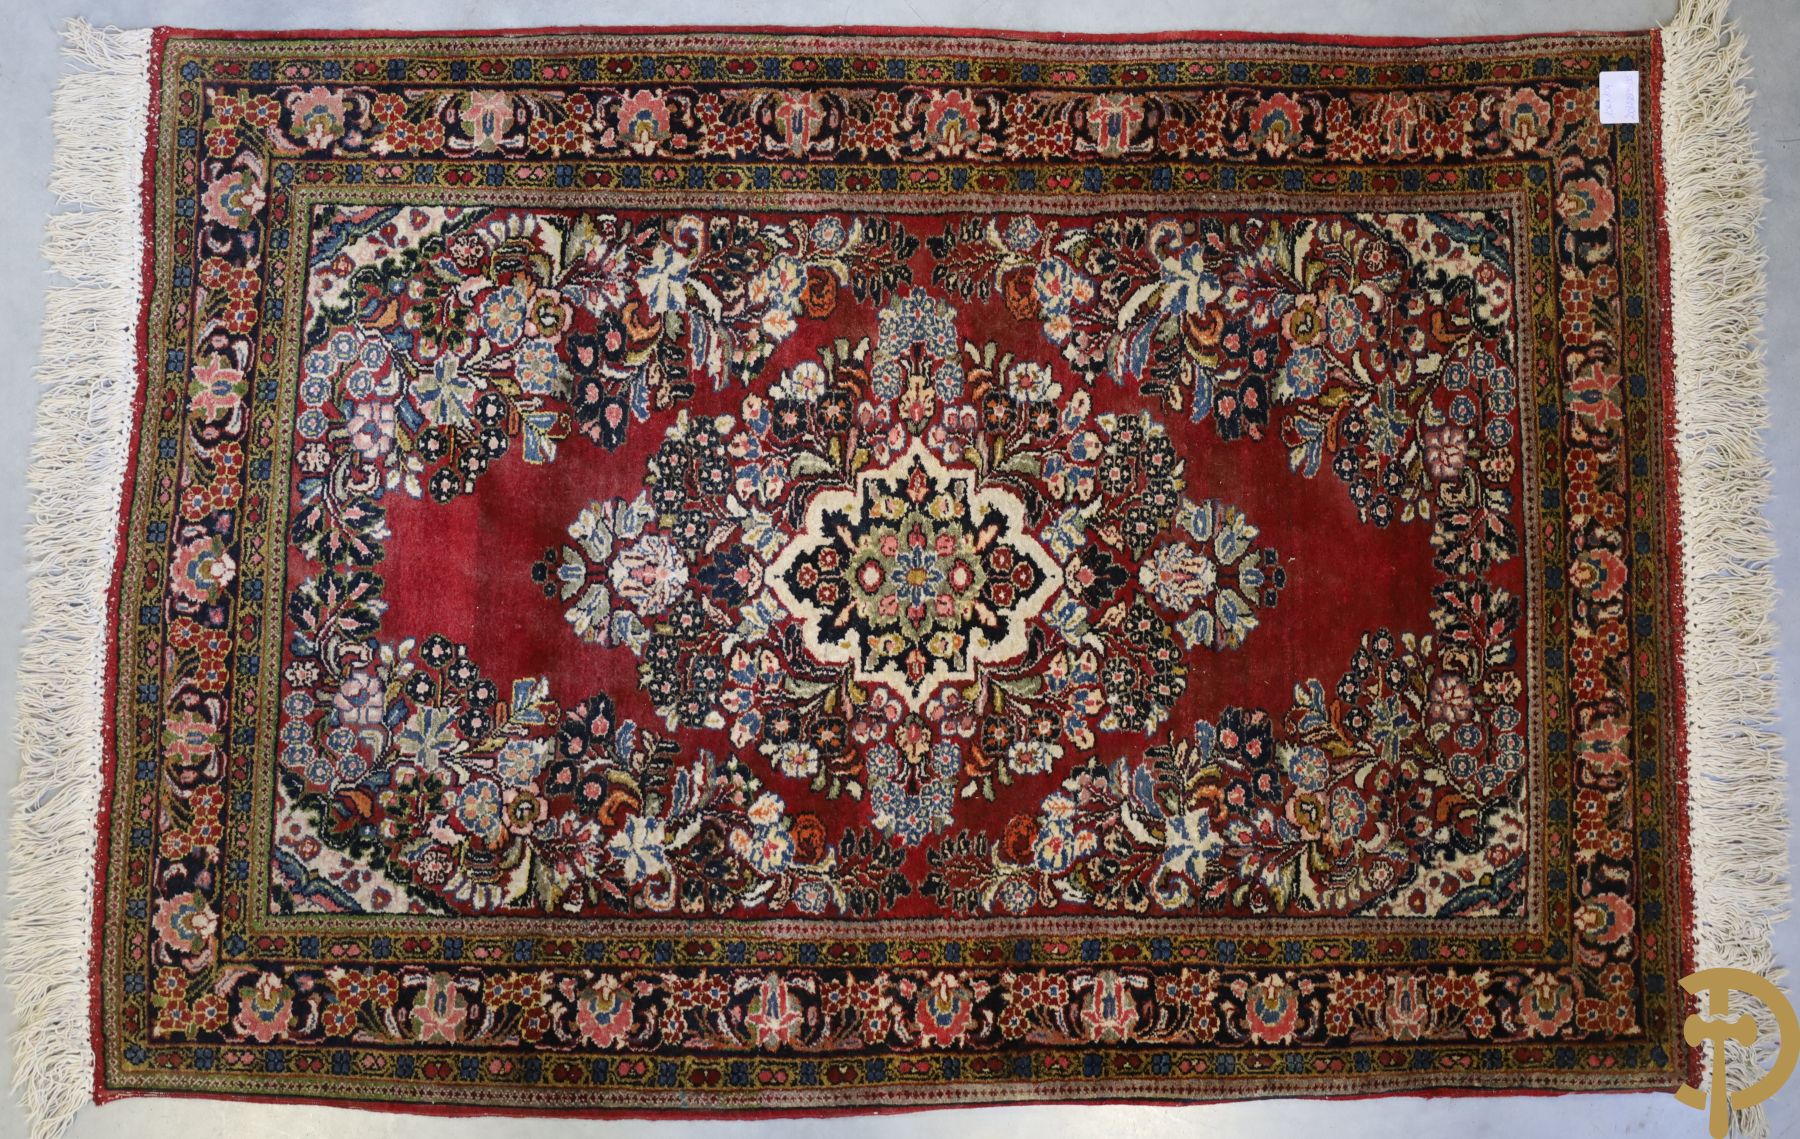 Oosters handgeknoopt tapijt met rode fond en bloementafereel